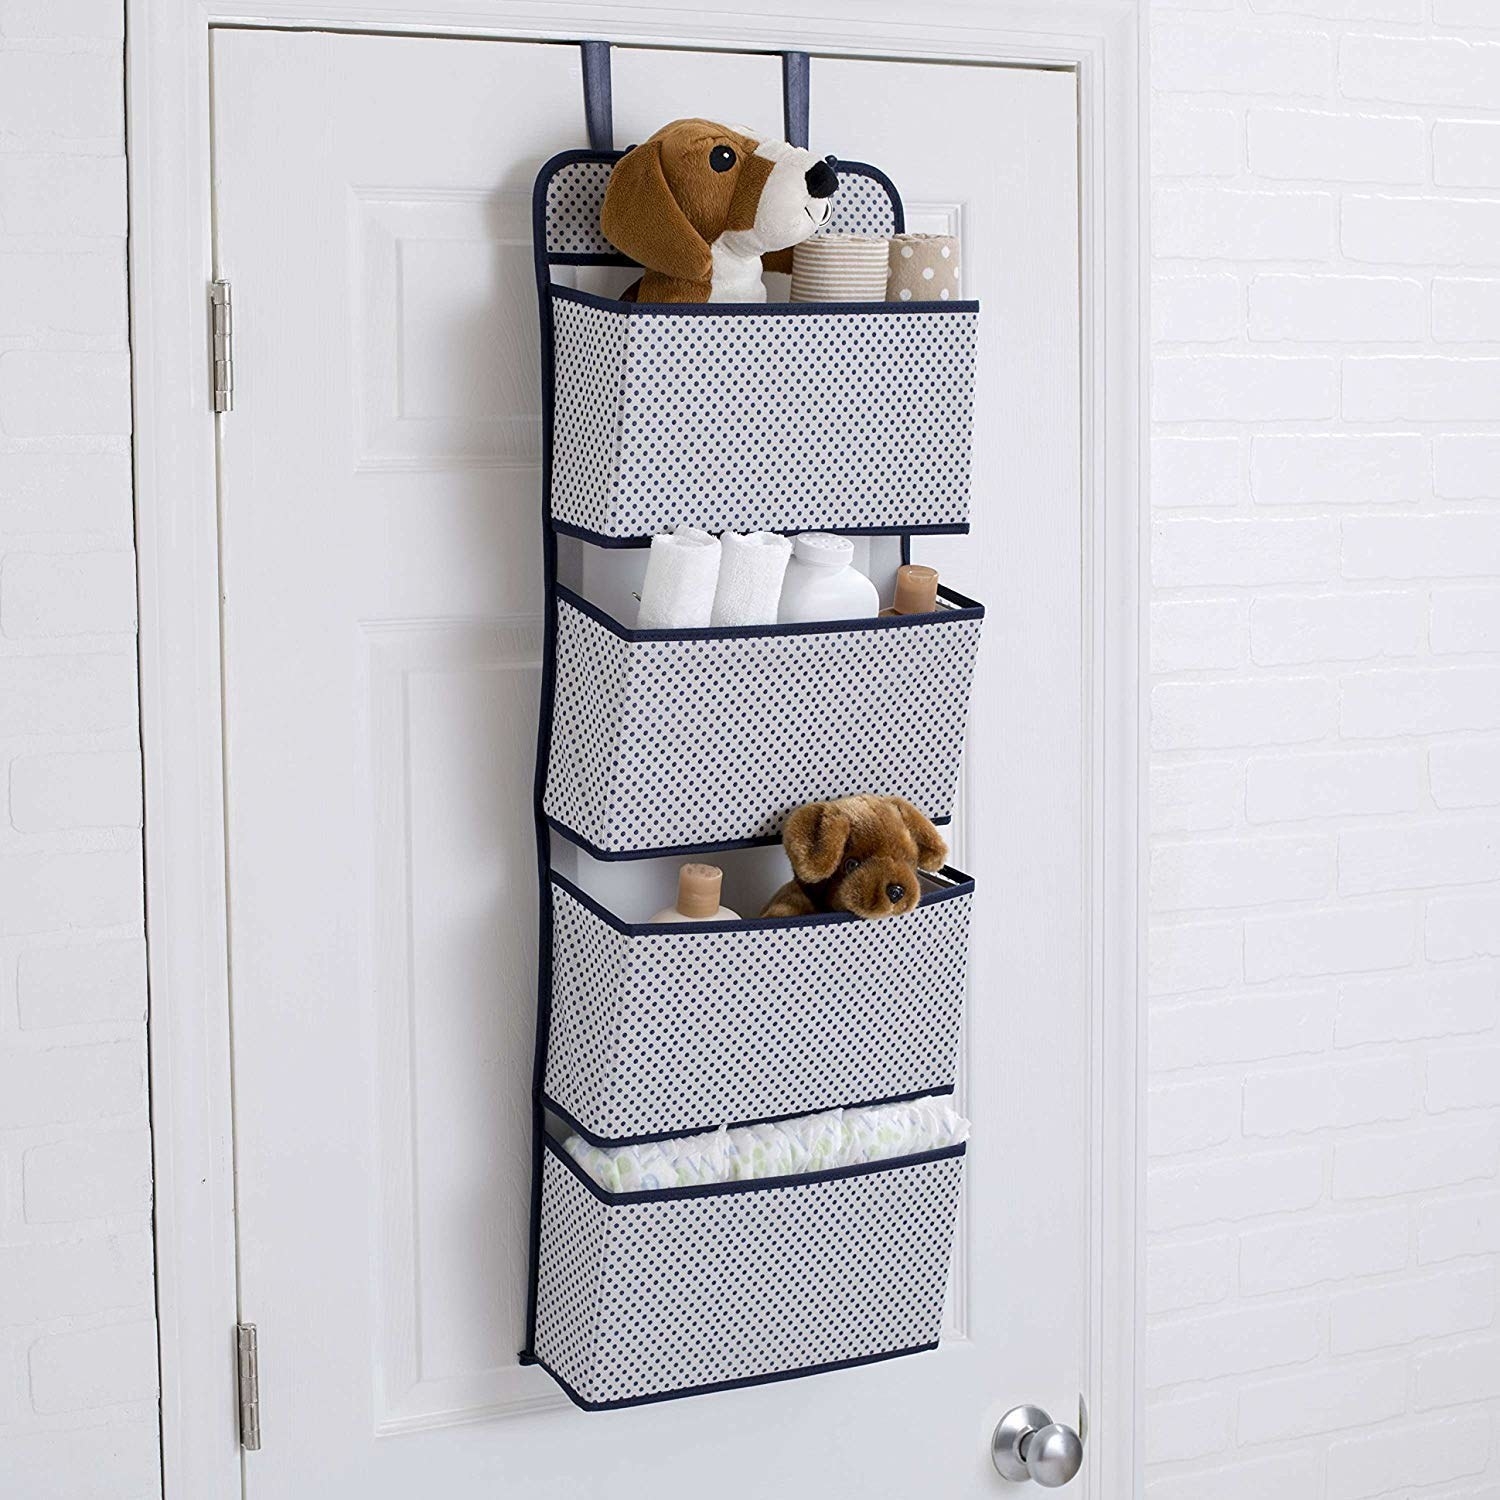 A 4-pocket door hanging organiser with towels and bathroom necessities